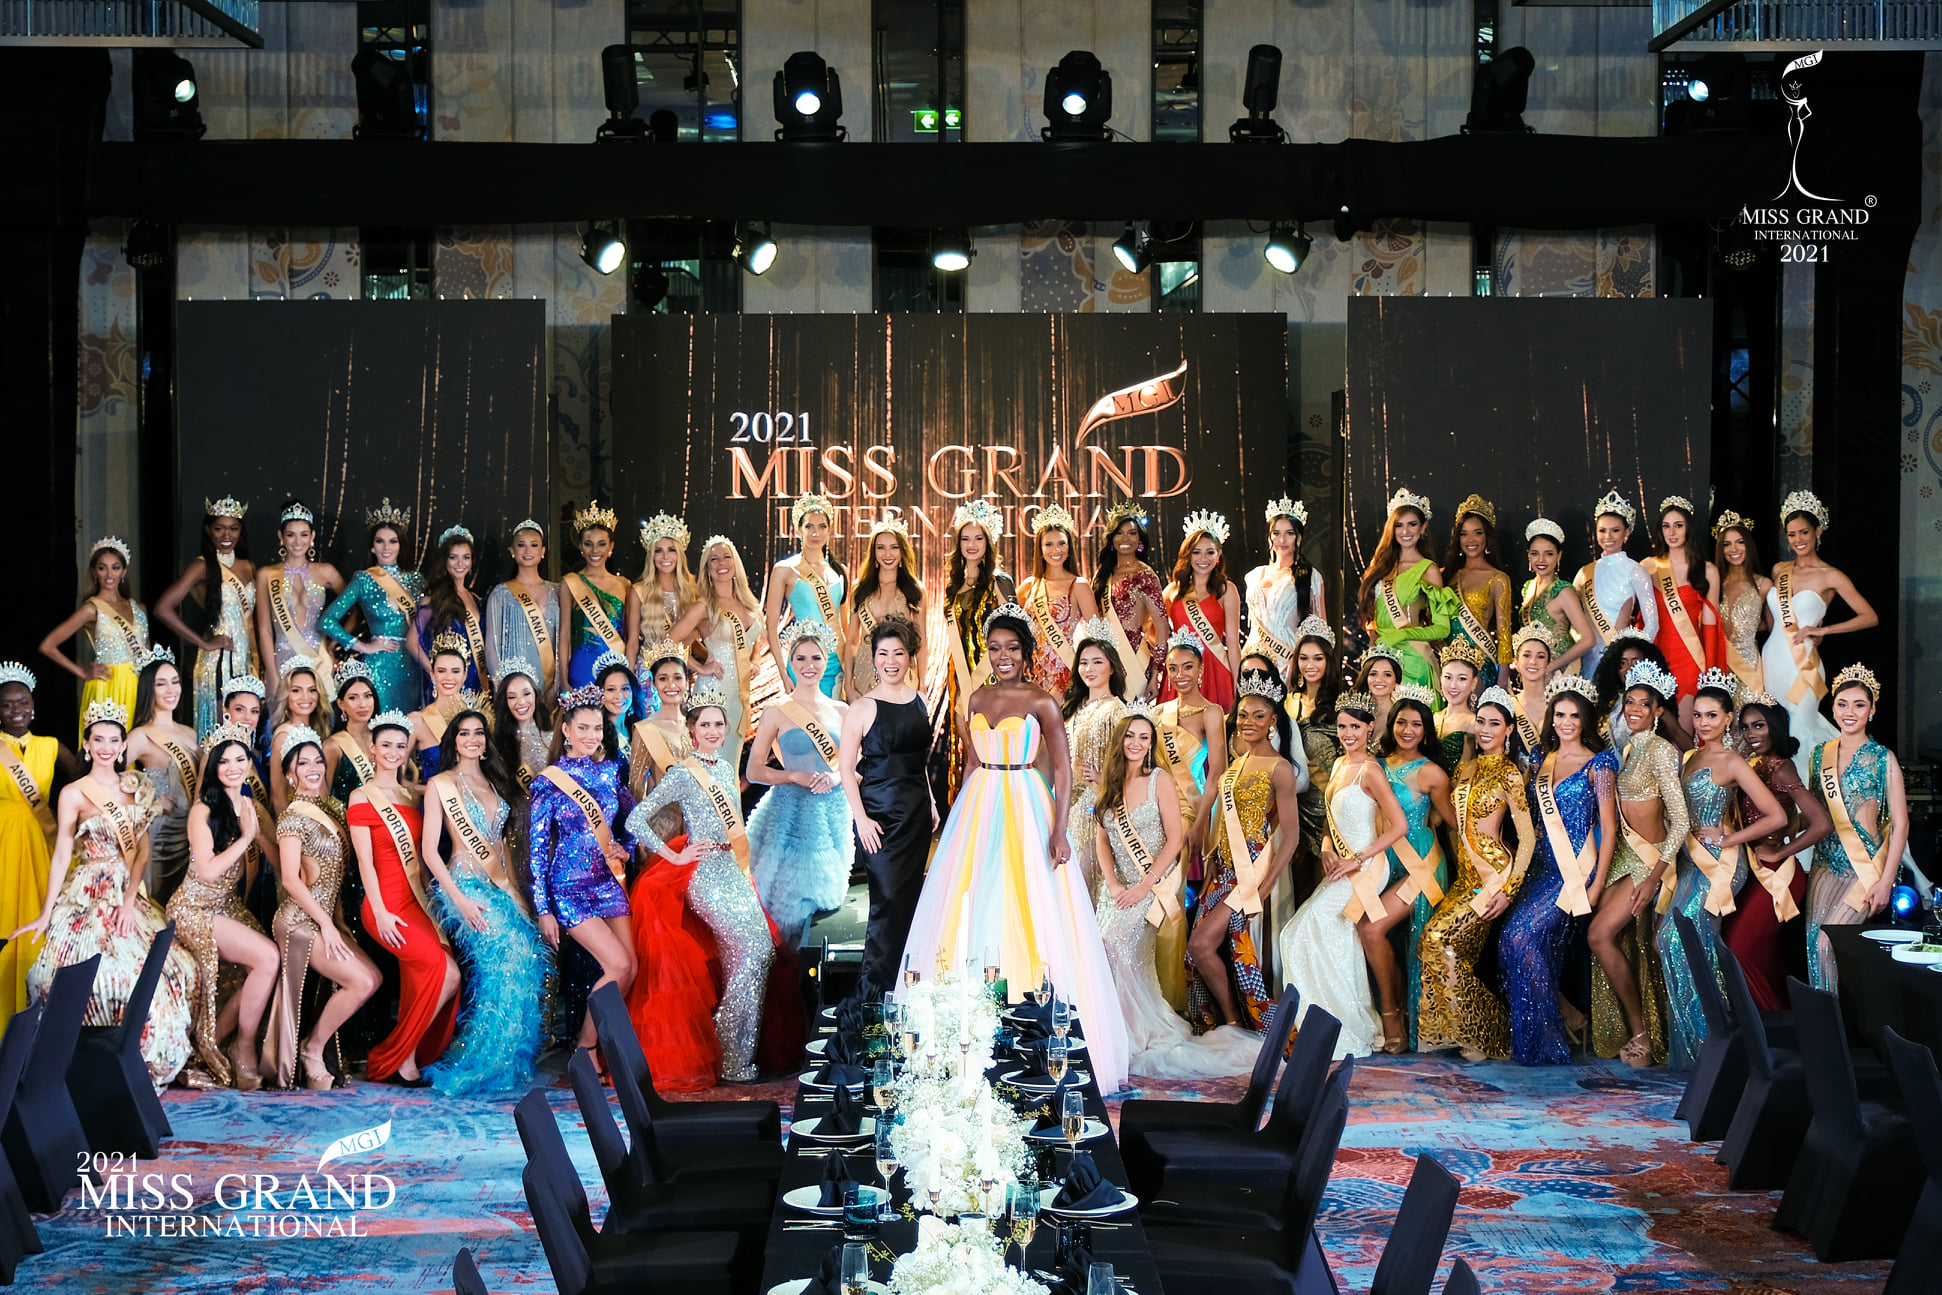 Miss World, Miss Universe, Miss Grand International diễn ra cùng thời điểm: Đặt lên bàn cân cuộc thi nào có “sức nặng” hơn? - Ảnh 8.